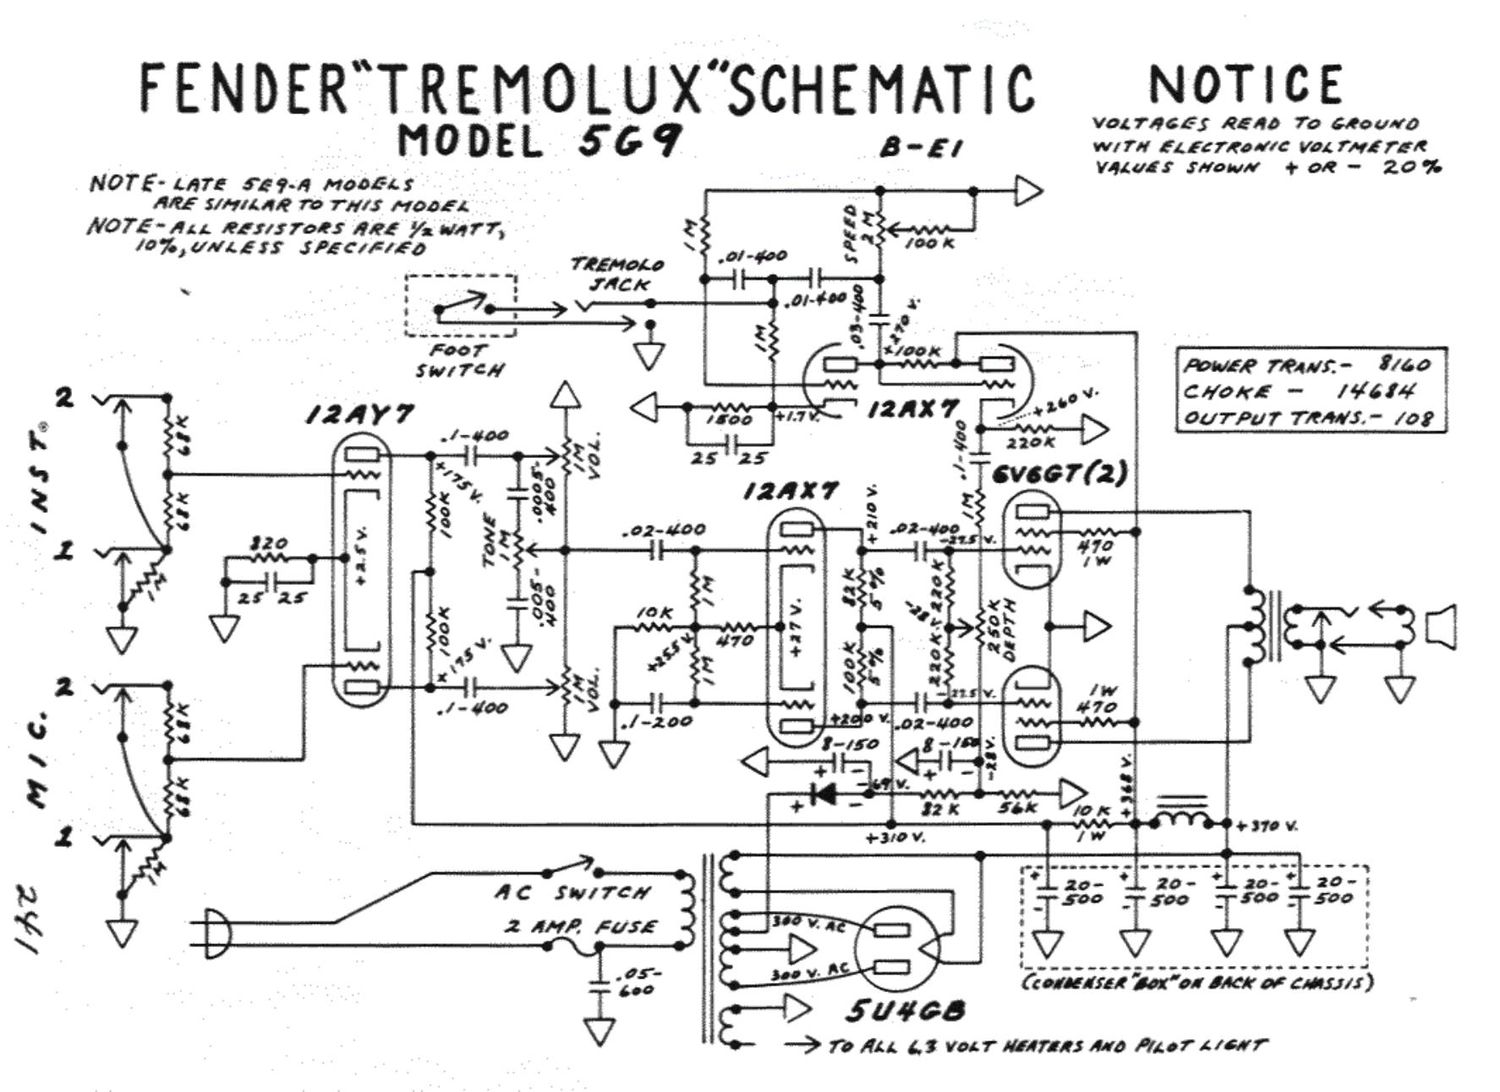 fender tremolux 5g9 schematic